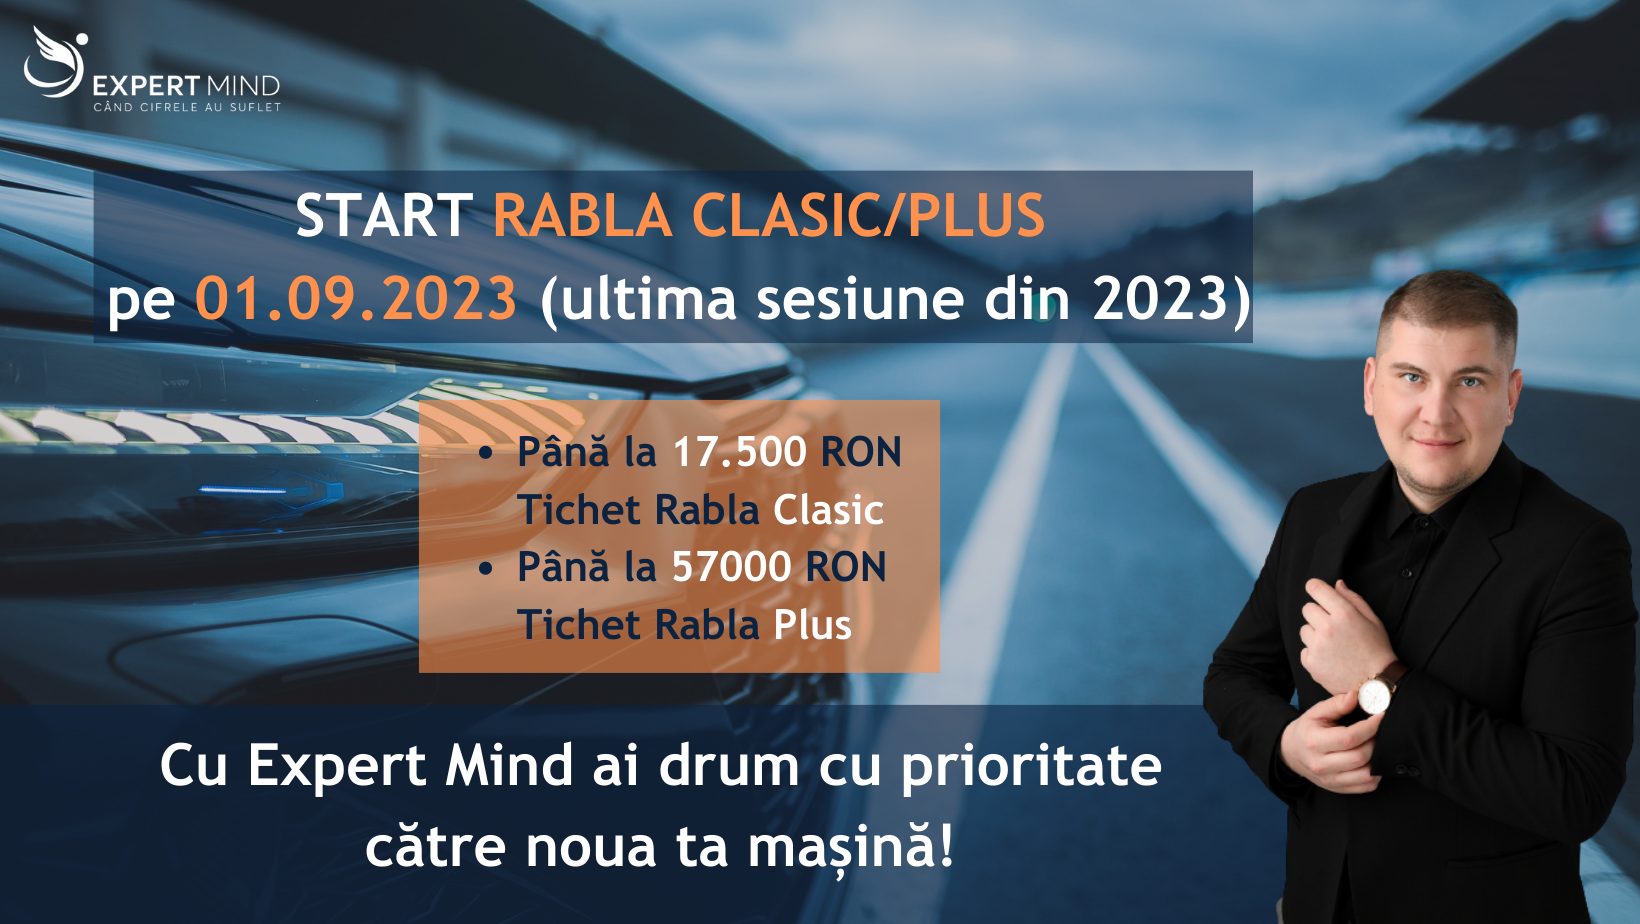 Ultima sesiune a programelor Rabla Clasic/Plus din 2023